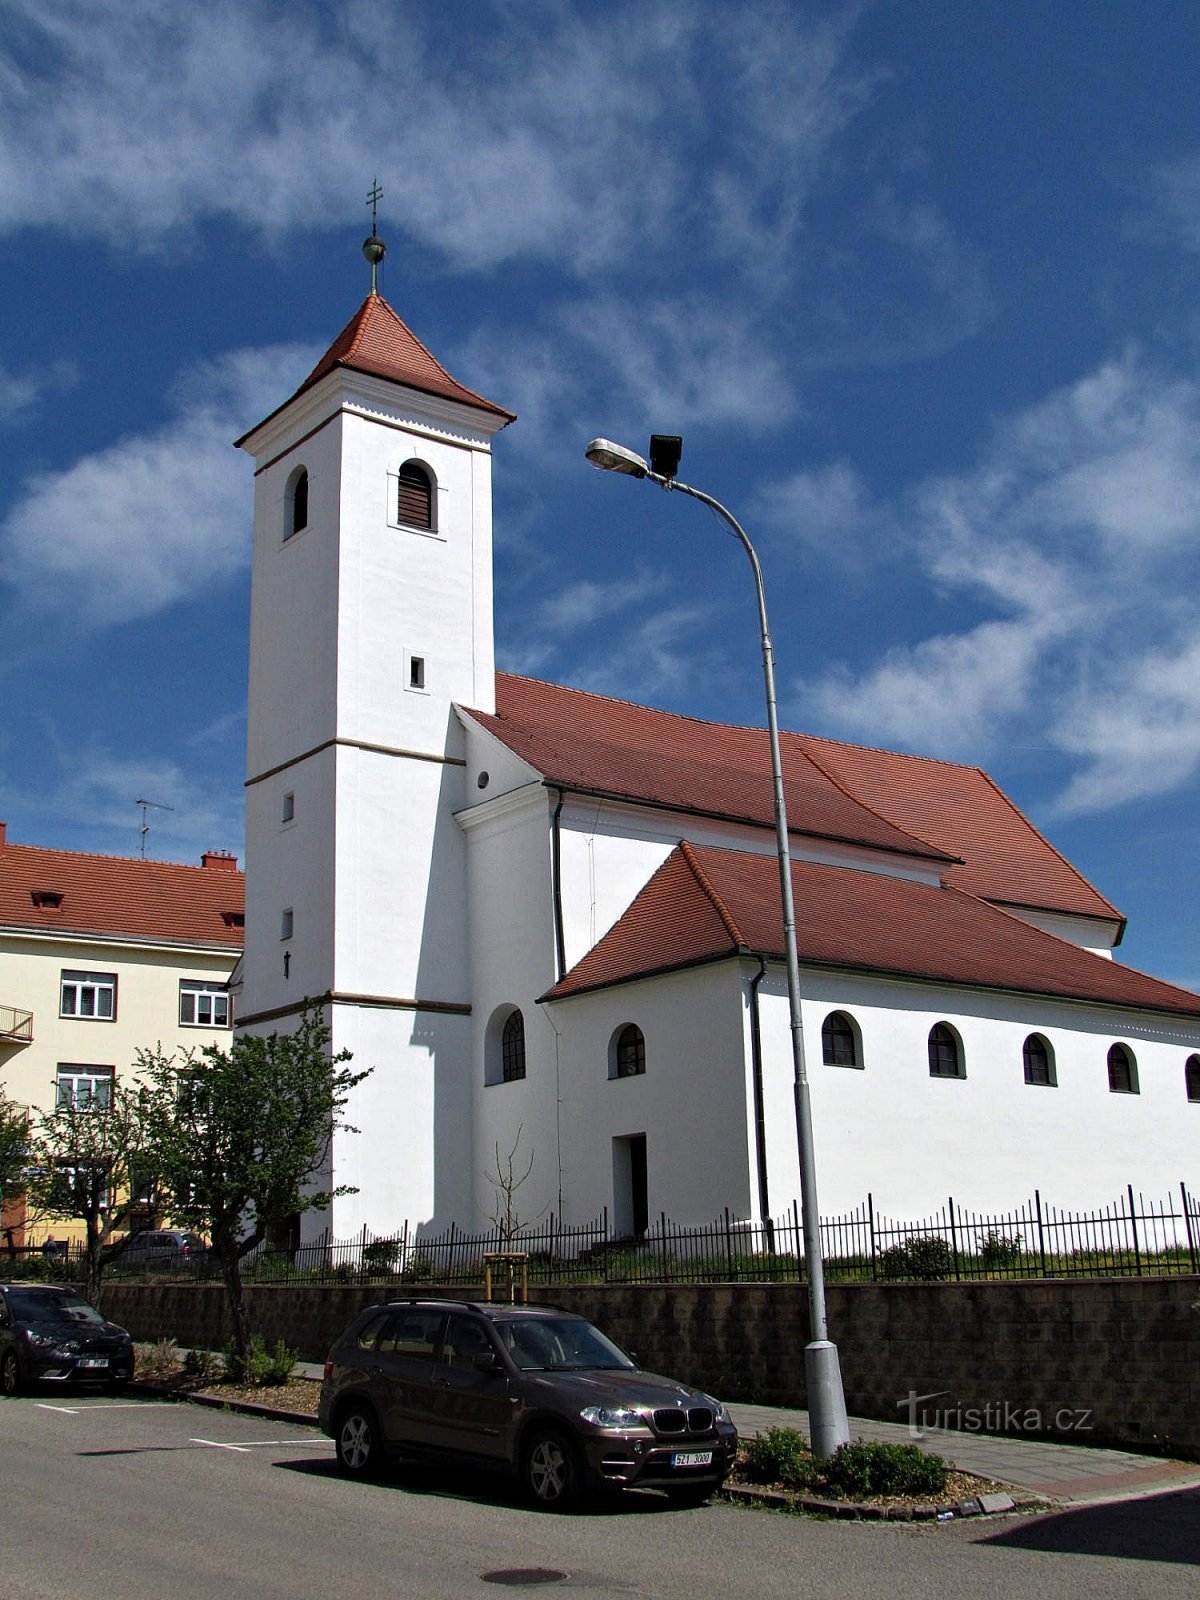 Igreja do Mestre Jan Hus em Uherskobrod